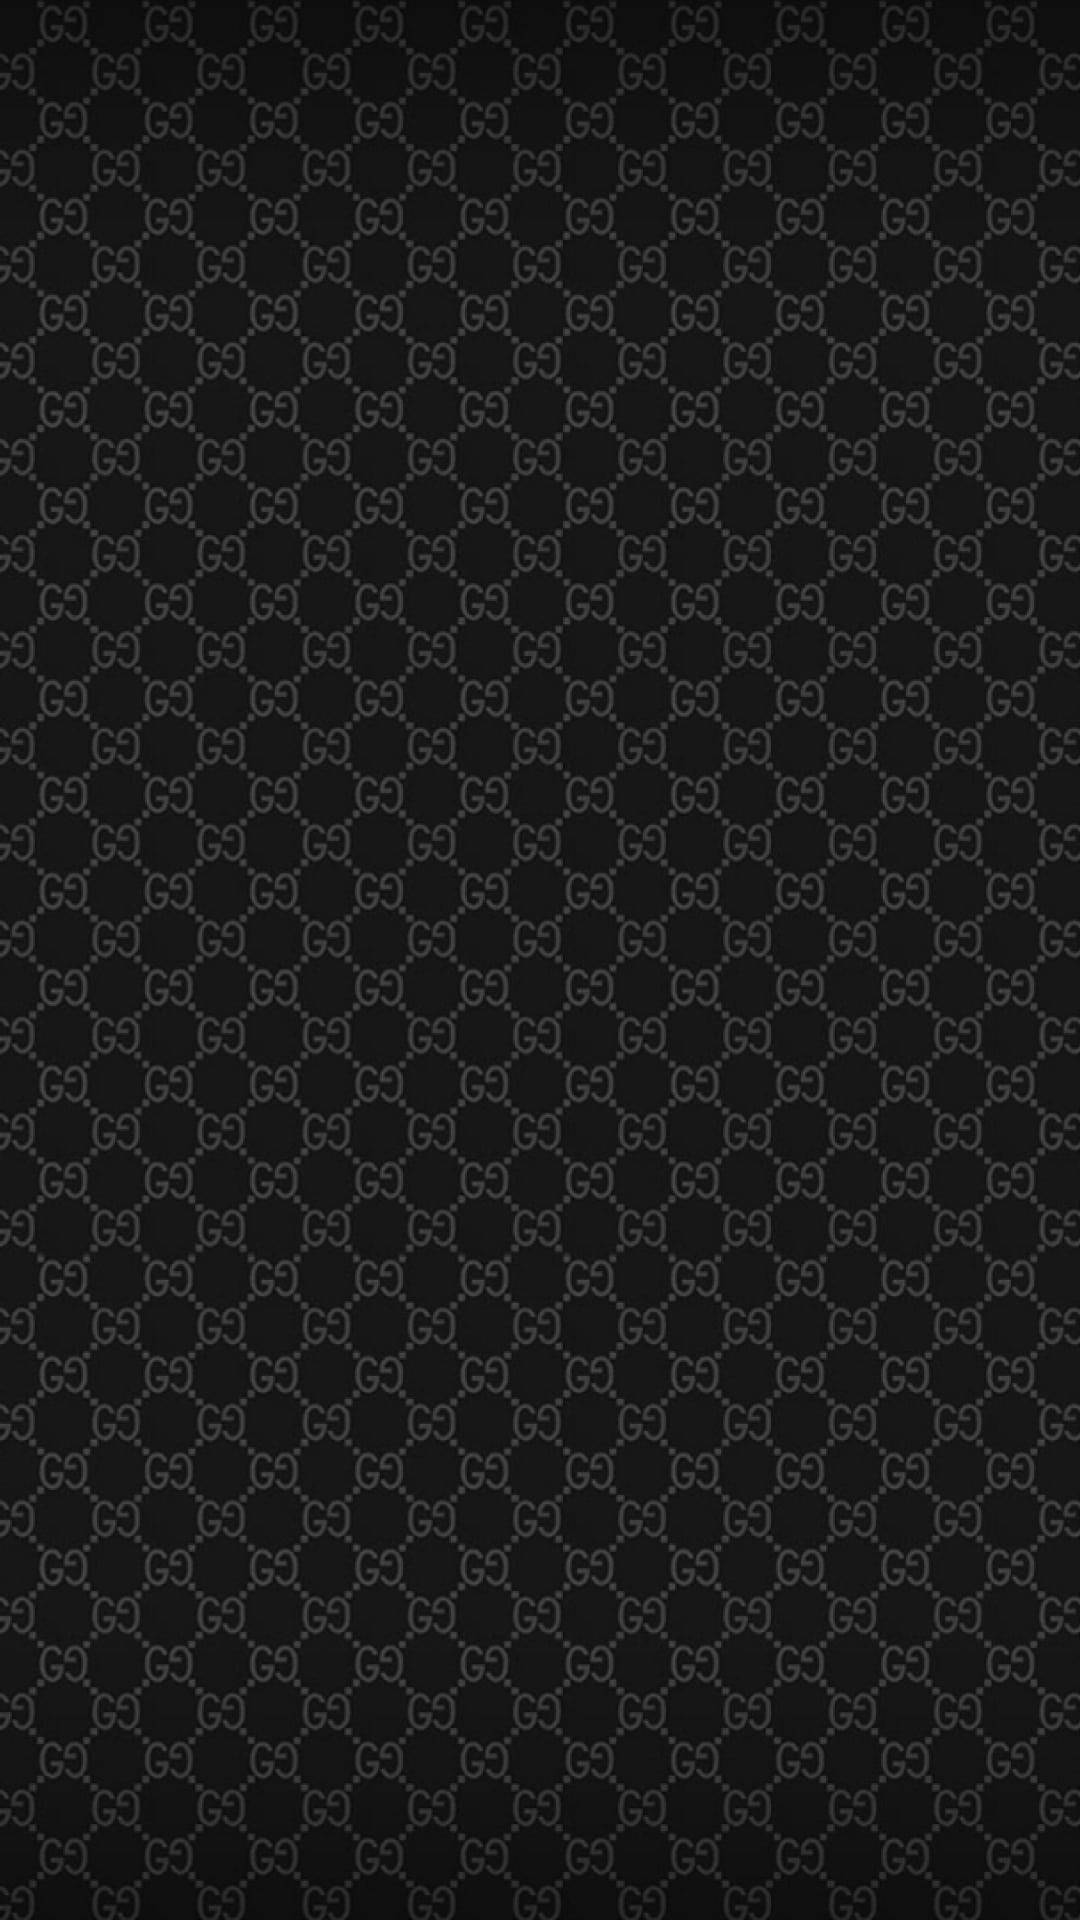 Patrónclásico Negro De Moda Con El Logotipo Gucci. Fondo de pantalla